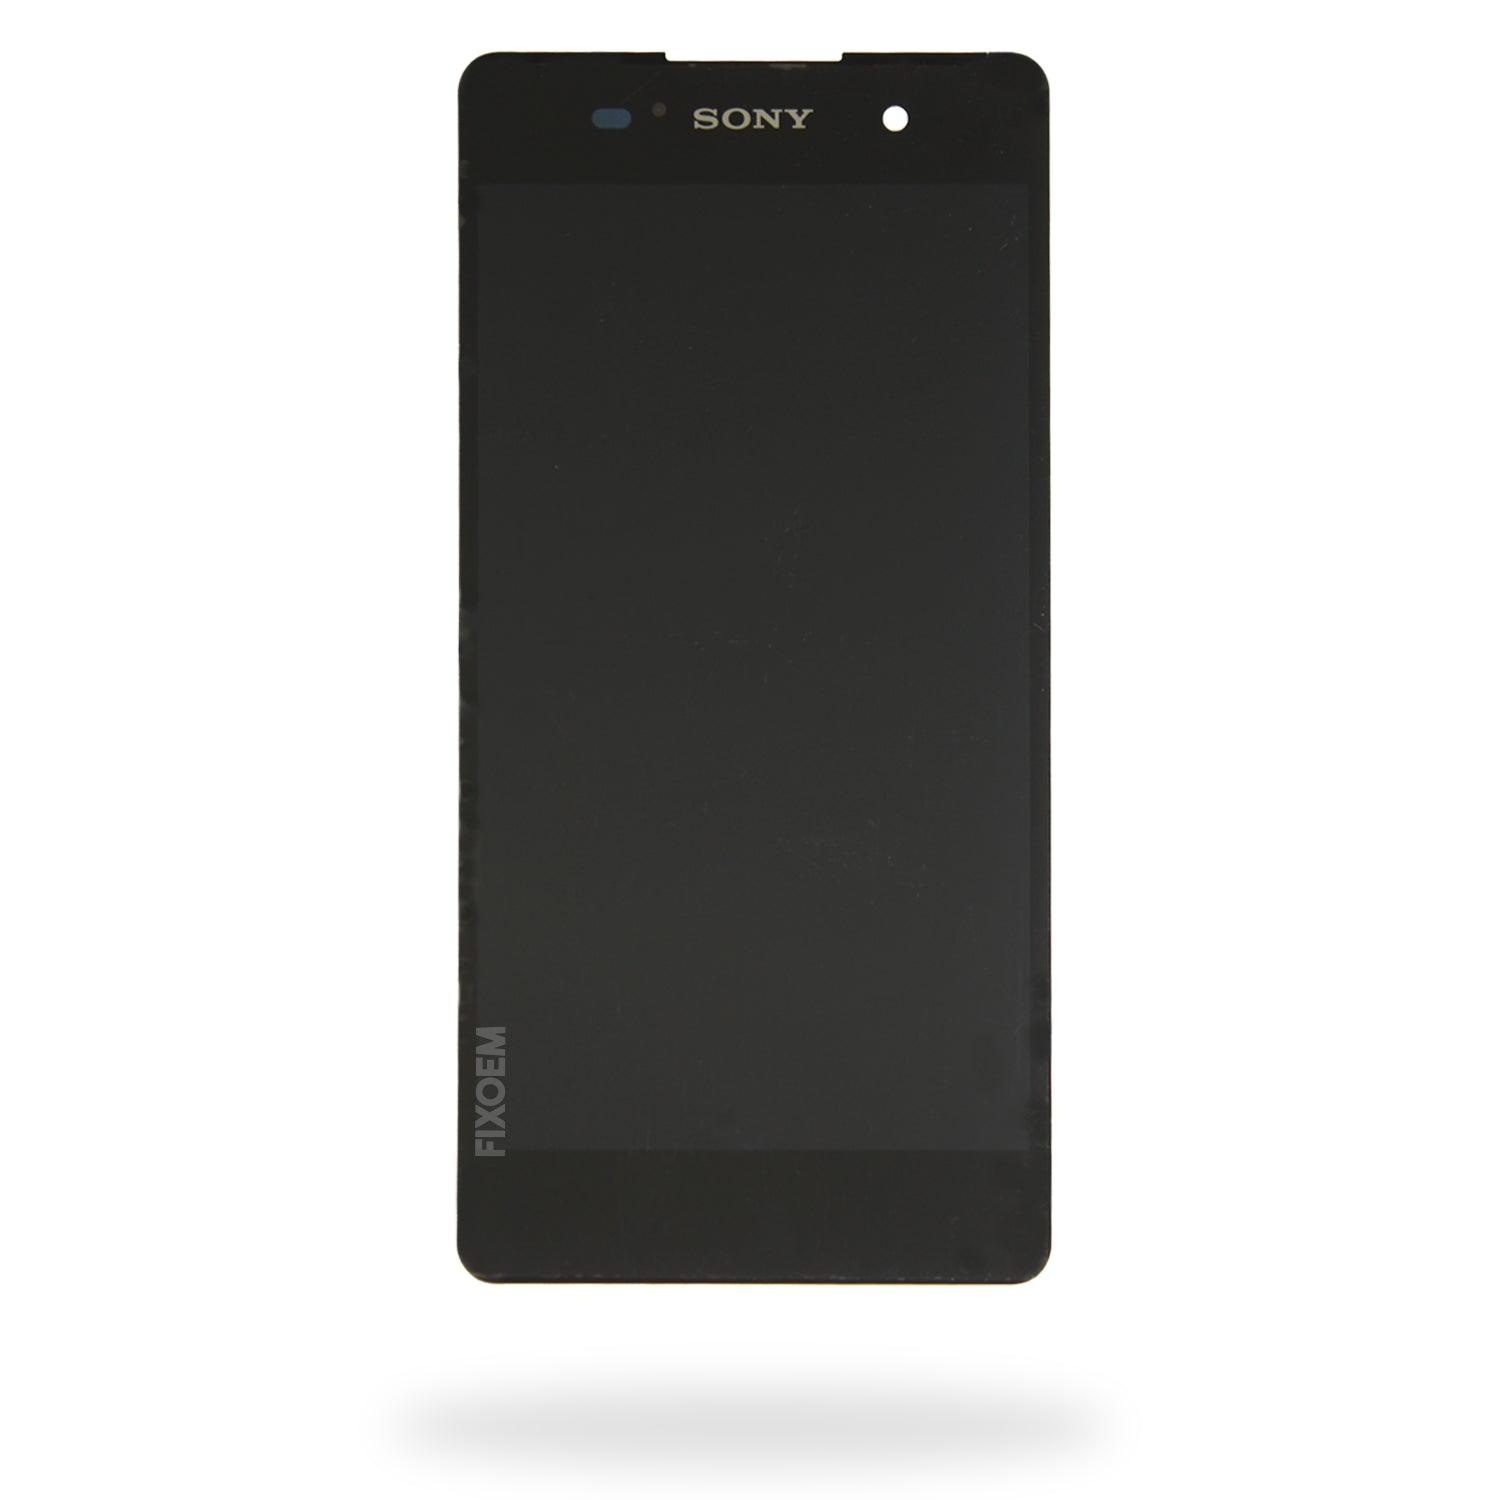 Display Sony E5 IPS F3311 a solo $ 225.00 Refaccion y puestos celulares, refurbish y microelectronica.- FixOEM